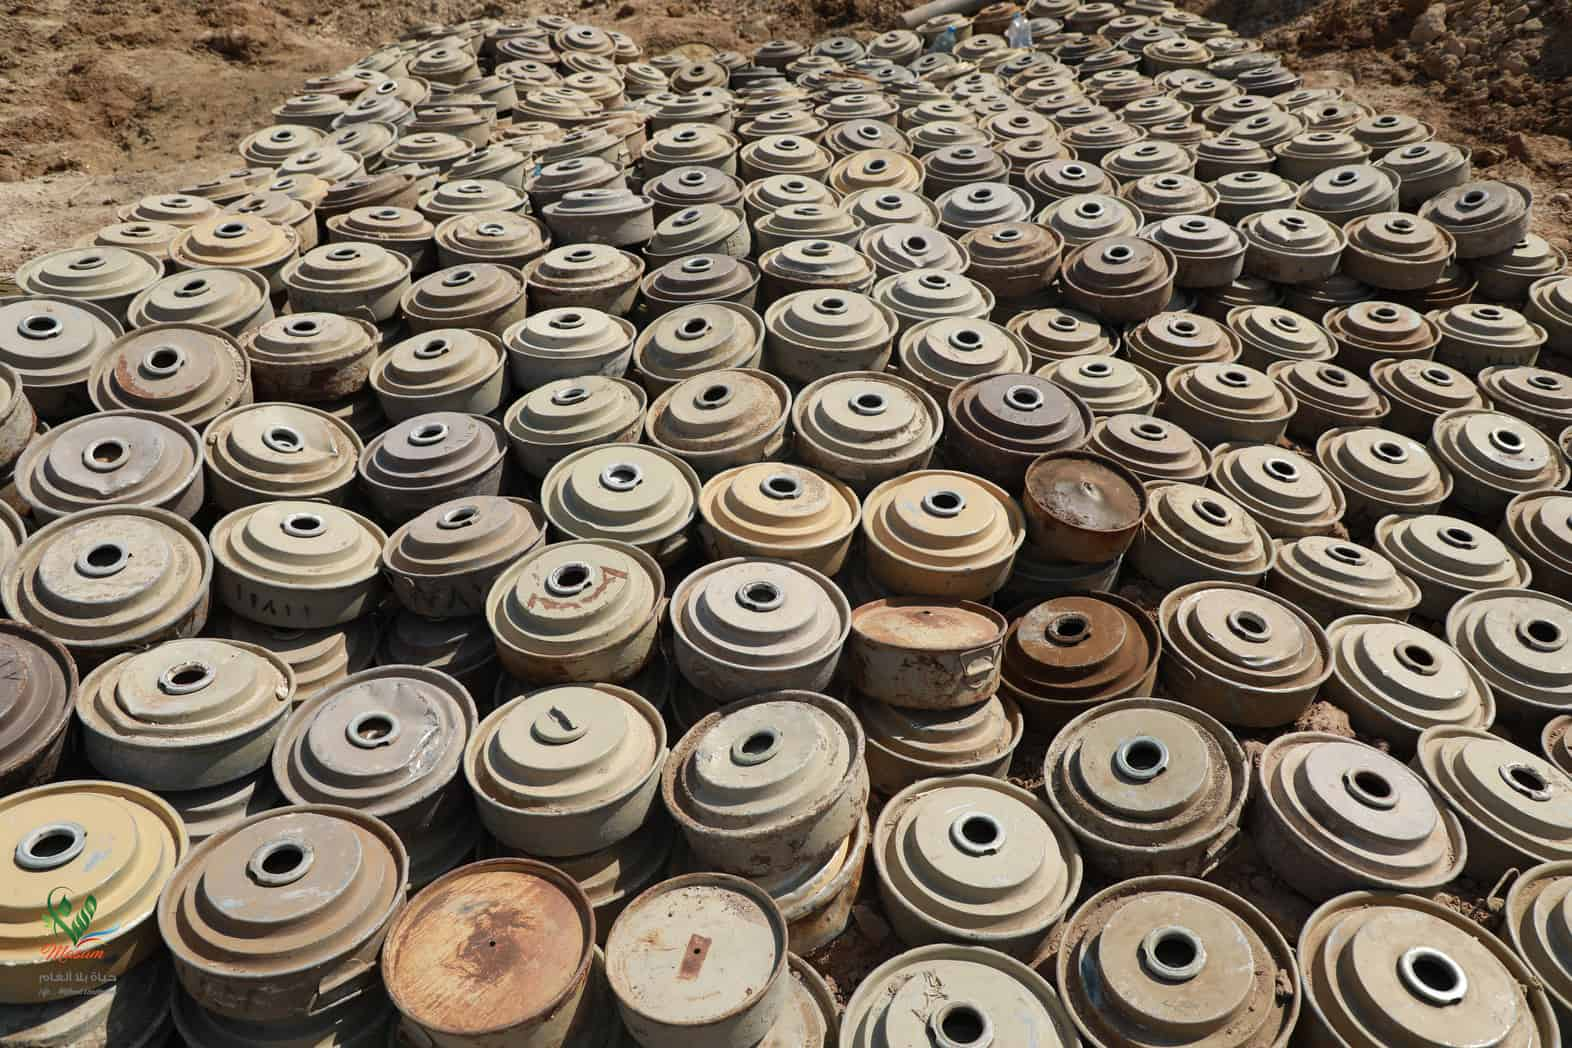 33 landmines found in liberated territories last week